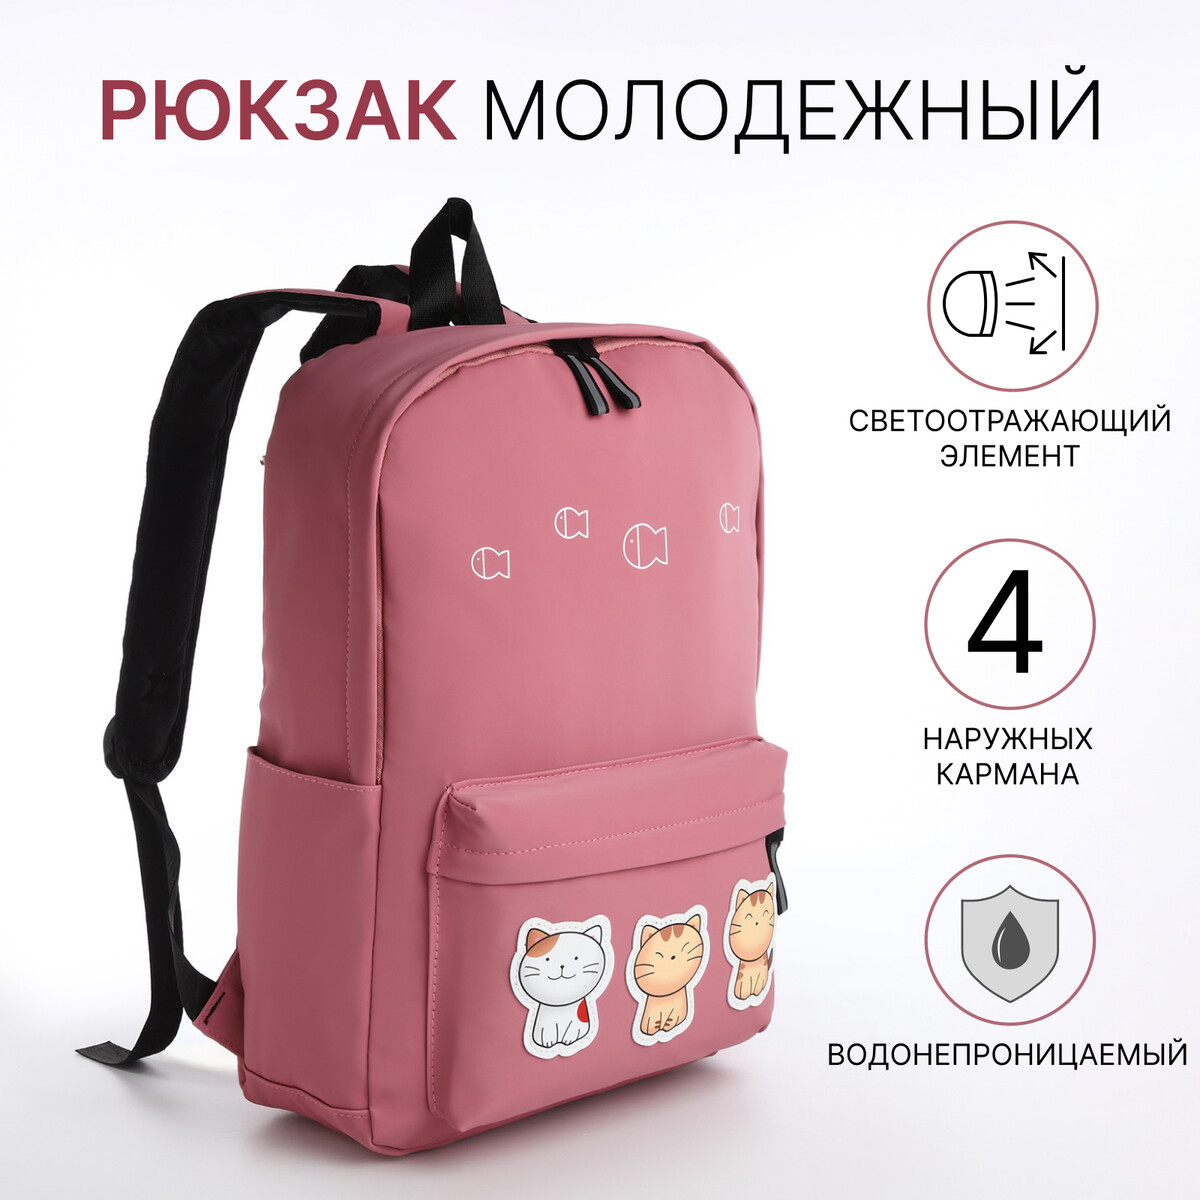 Рюкзак молодежный из текстиля на молнии, 4 кармана, цвет розовый рюкзак школьный из текстиля 3 кармана белый голубой